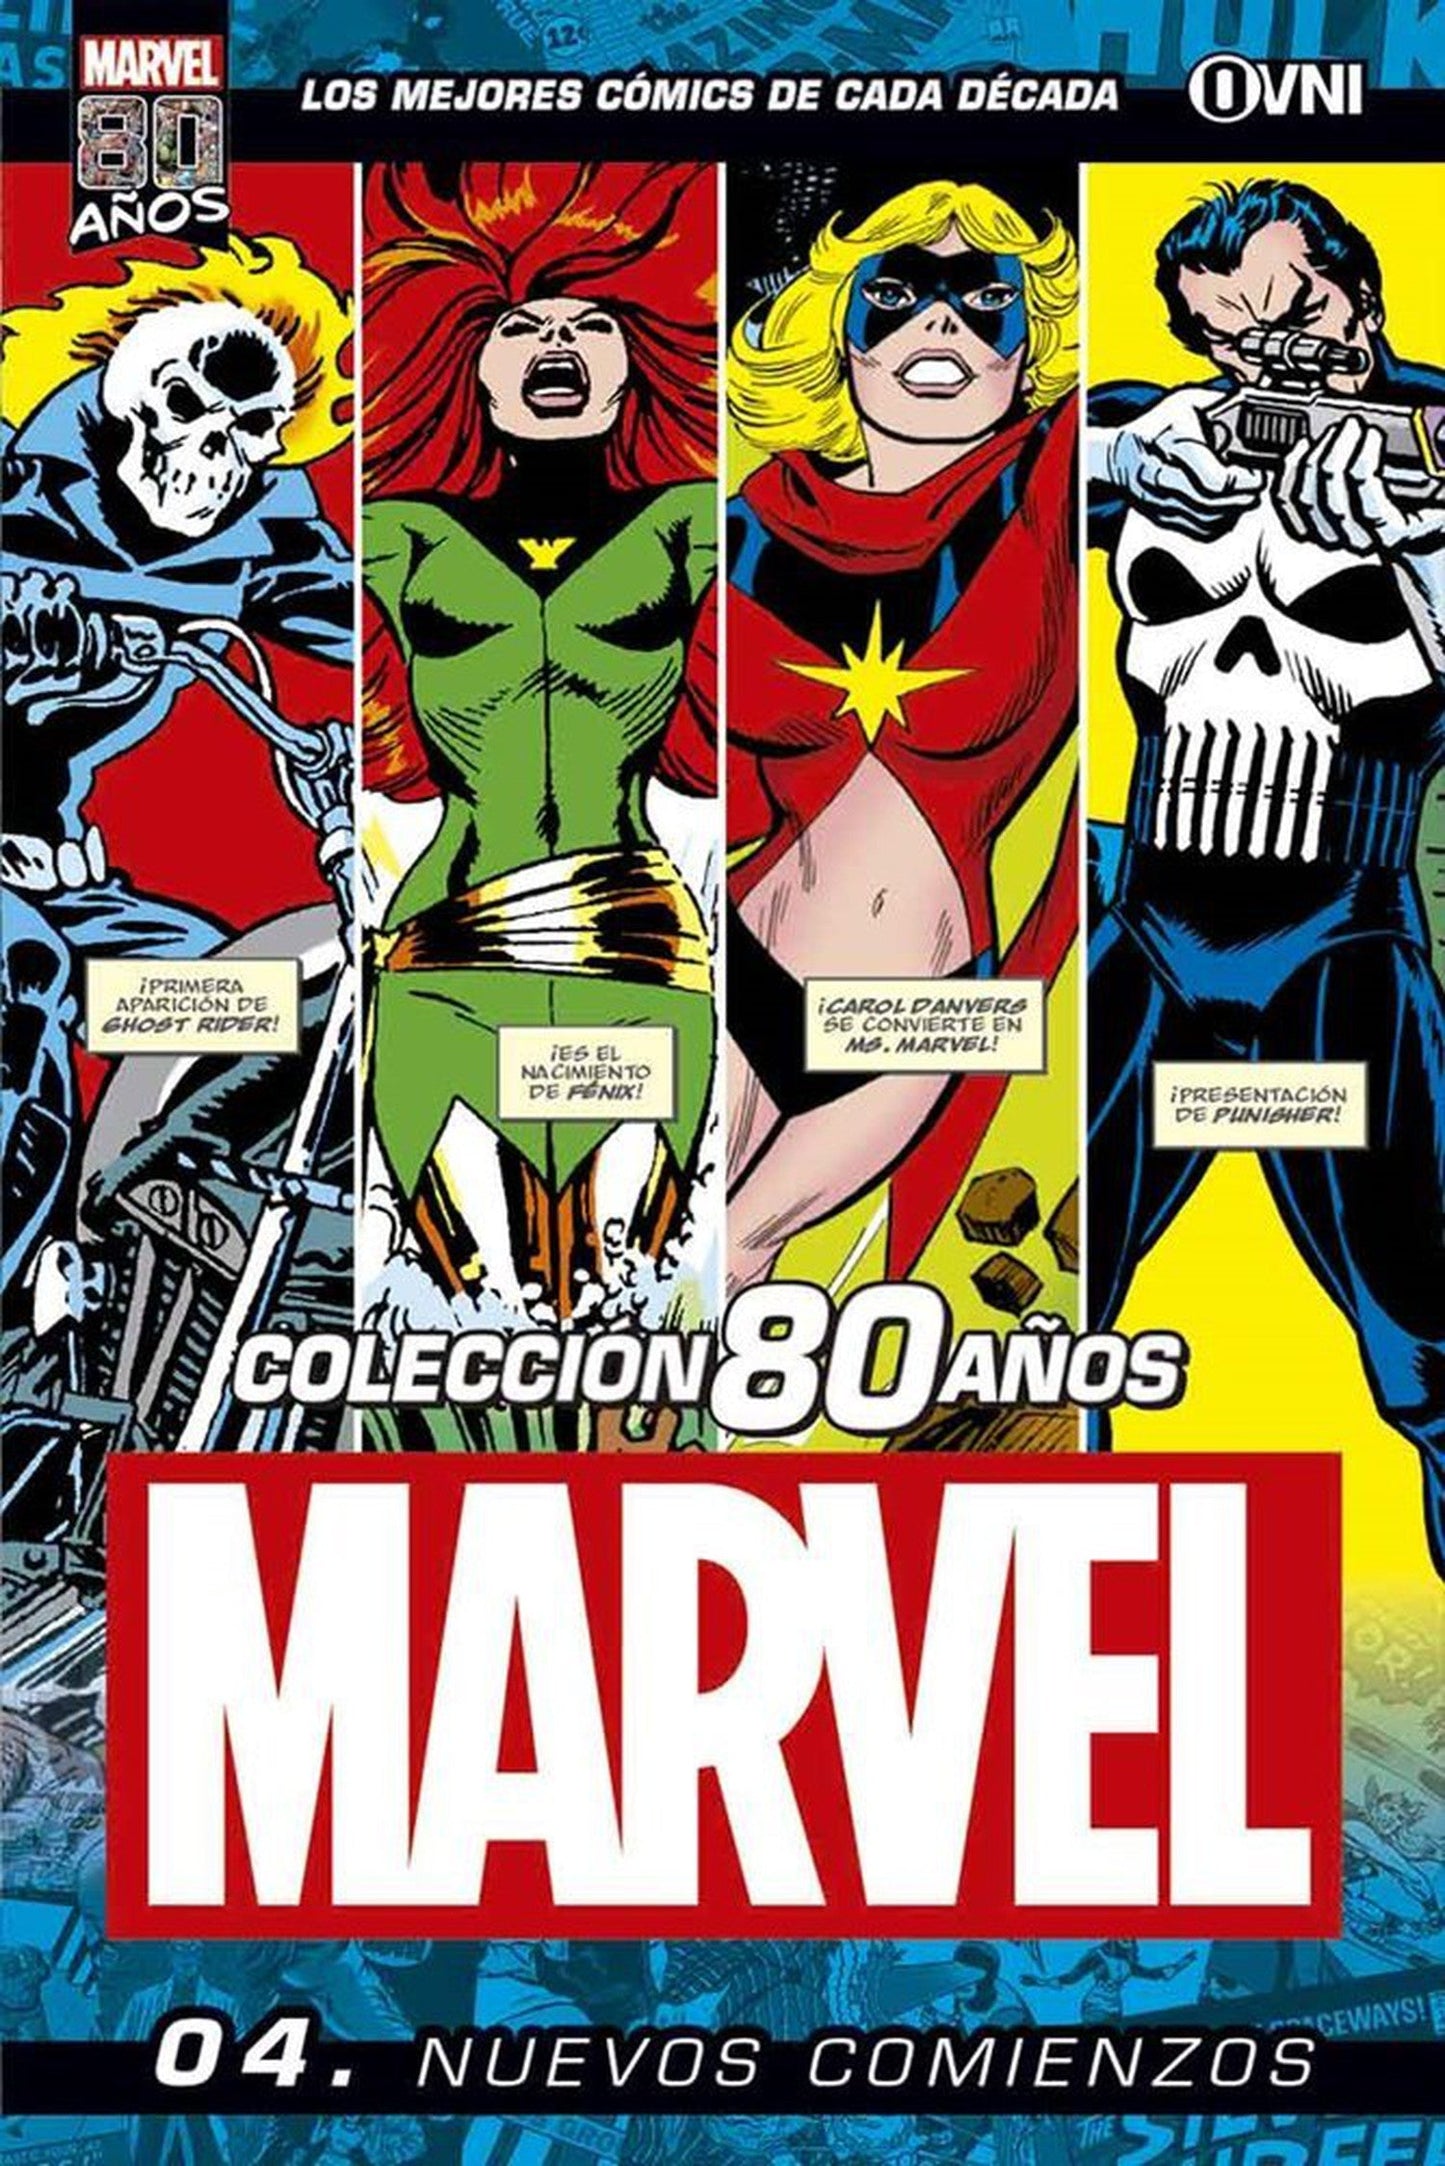 Coleccion Marvel 80 Años #4 Nuevos Comienzos OVNI Press ENcuadrocomics